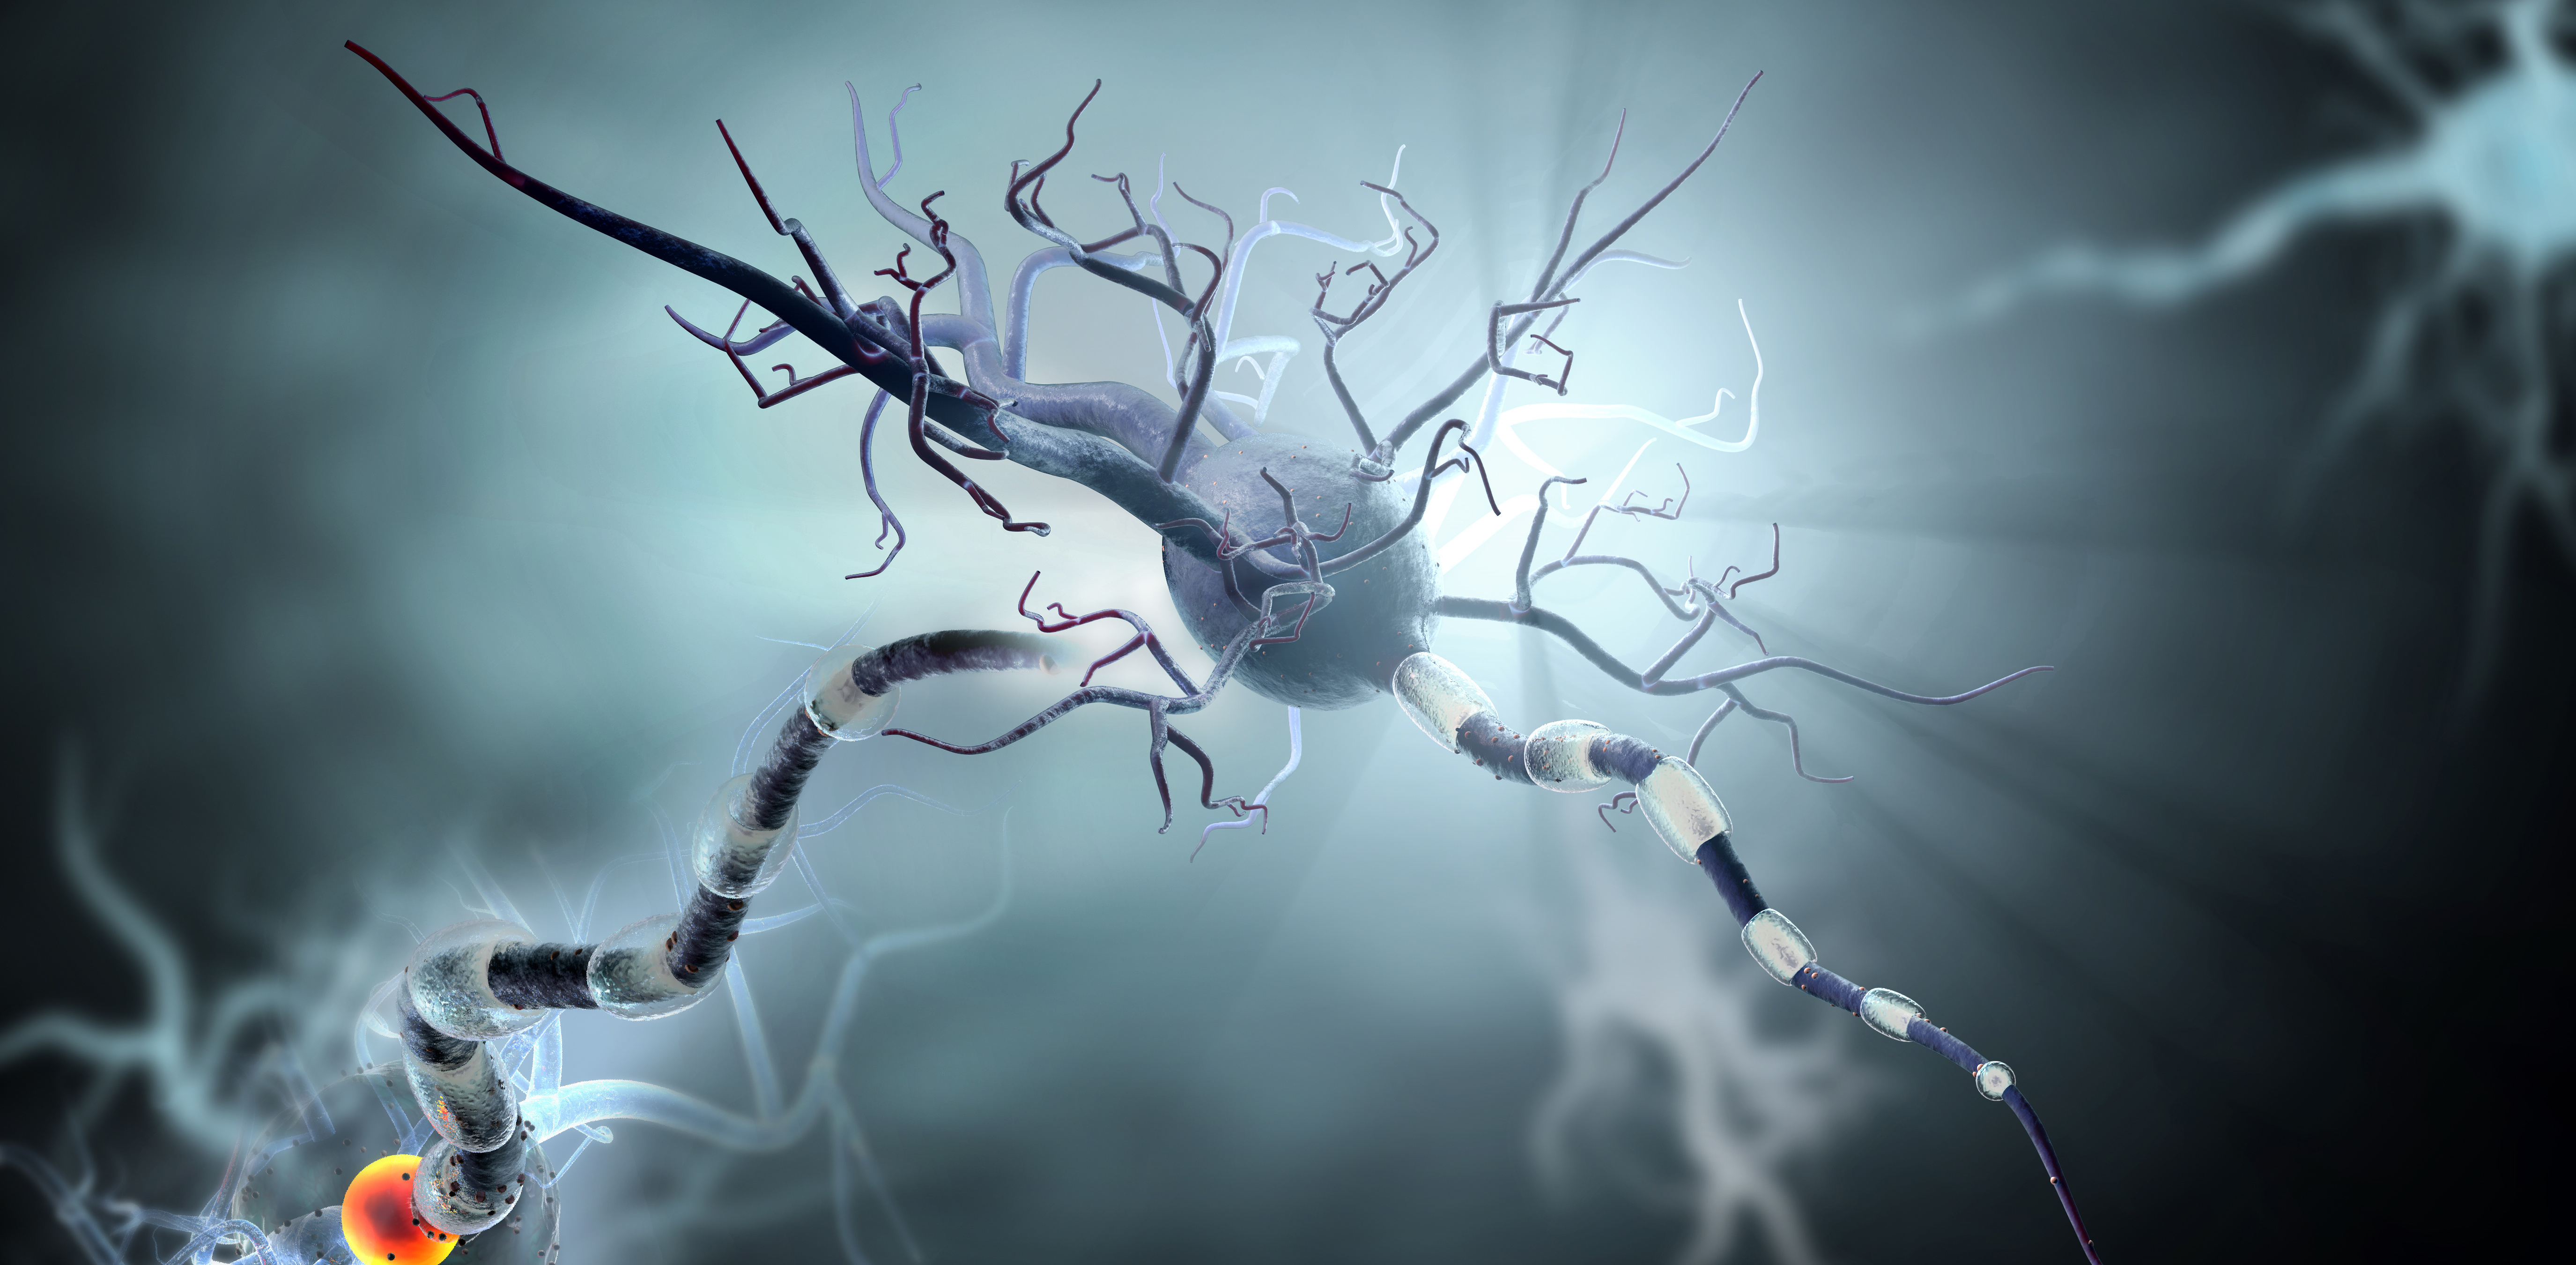 Des interneurones inhibiteurs, des cellules capables d'atténuer l'excitation des zones du cerveau et d'exercer ainsi une fonction de freinage, ne fonctionnent plus chez les patients épileptiques